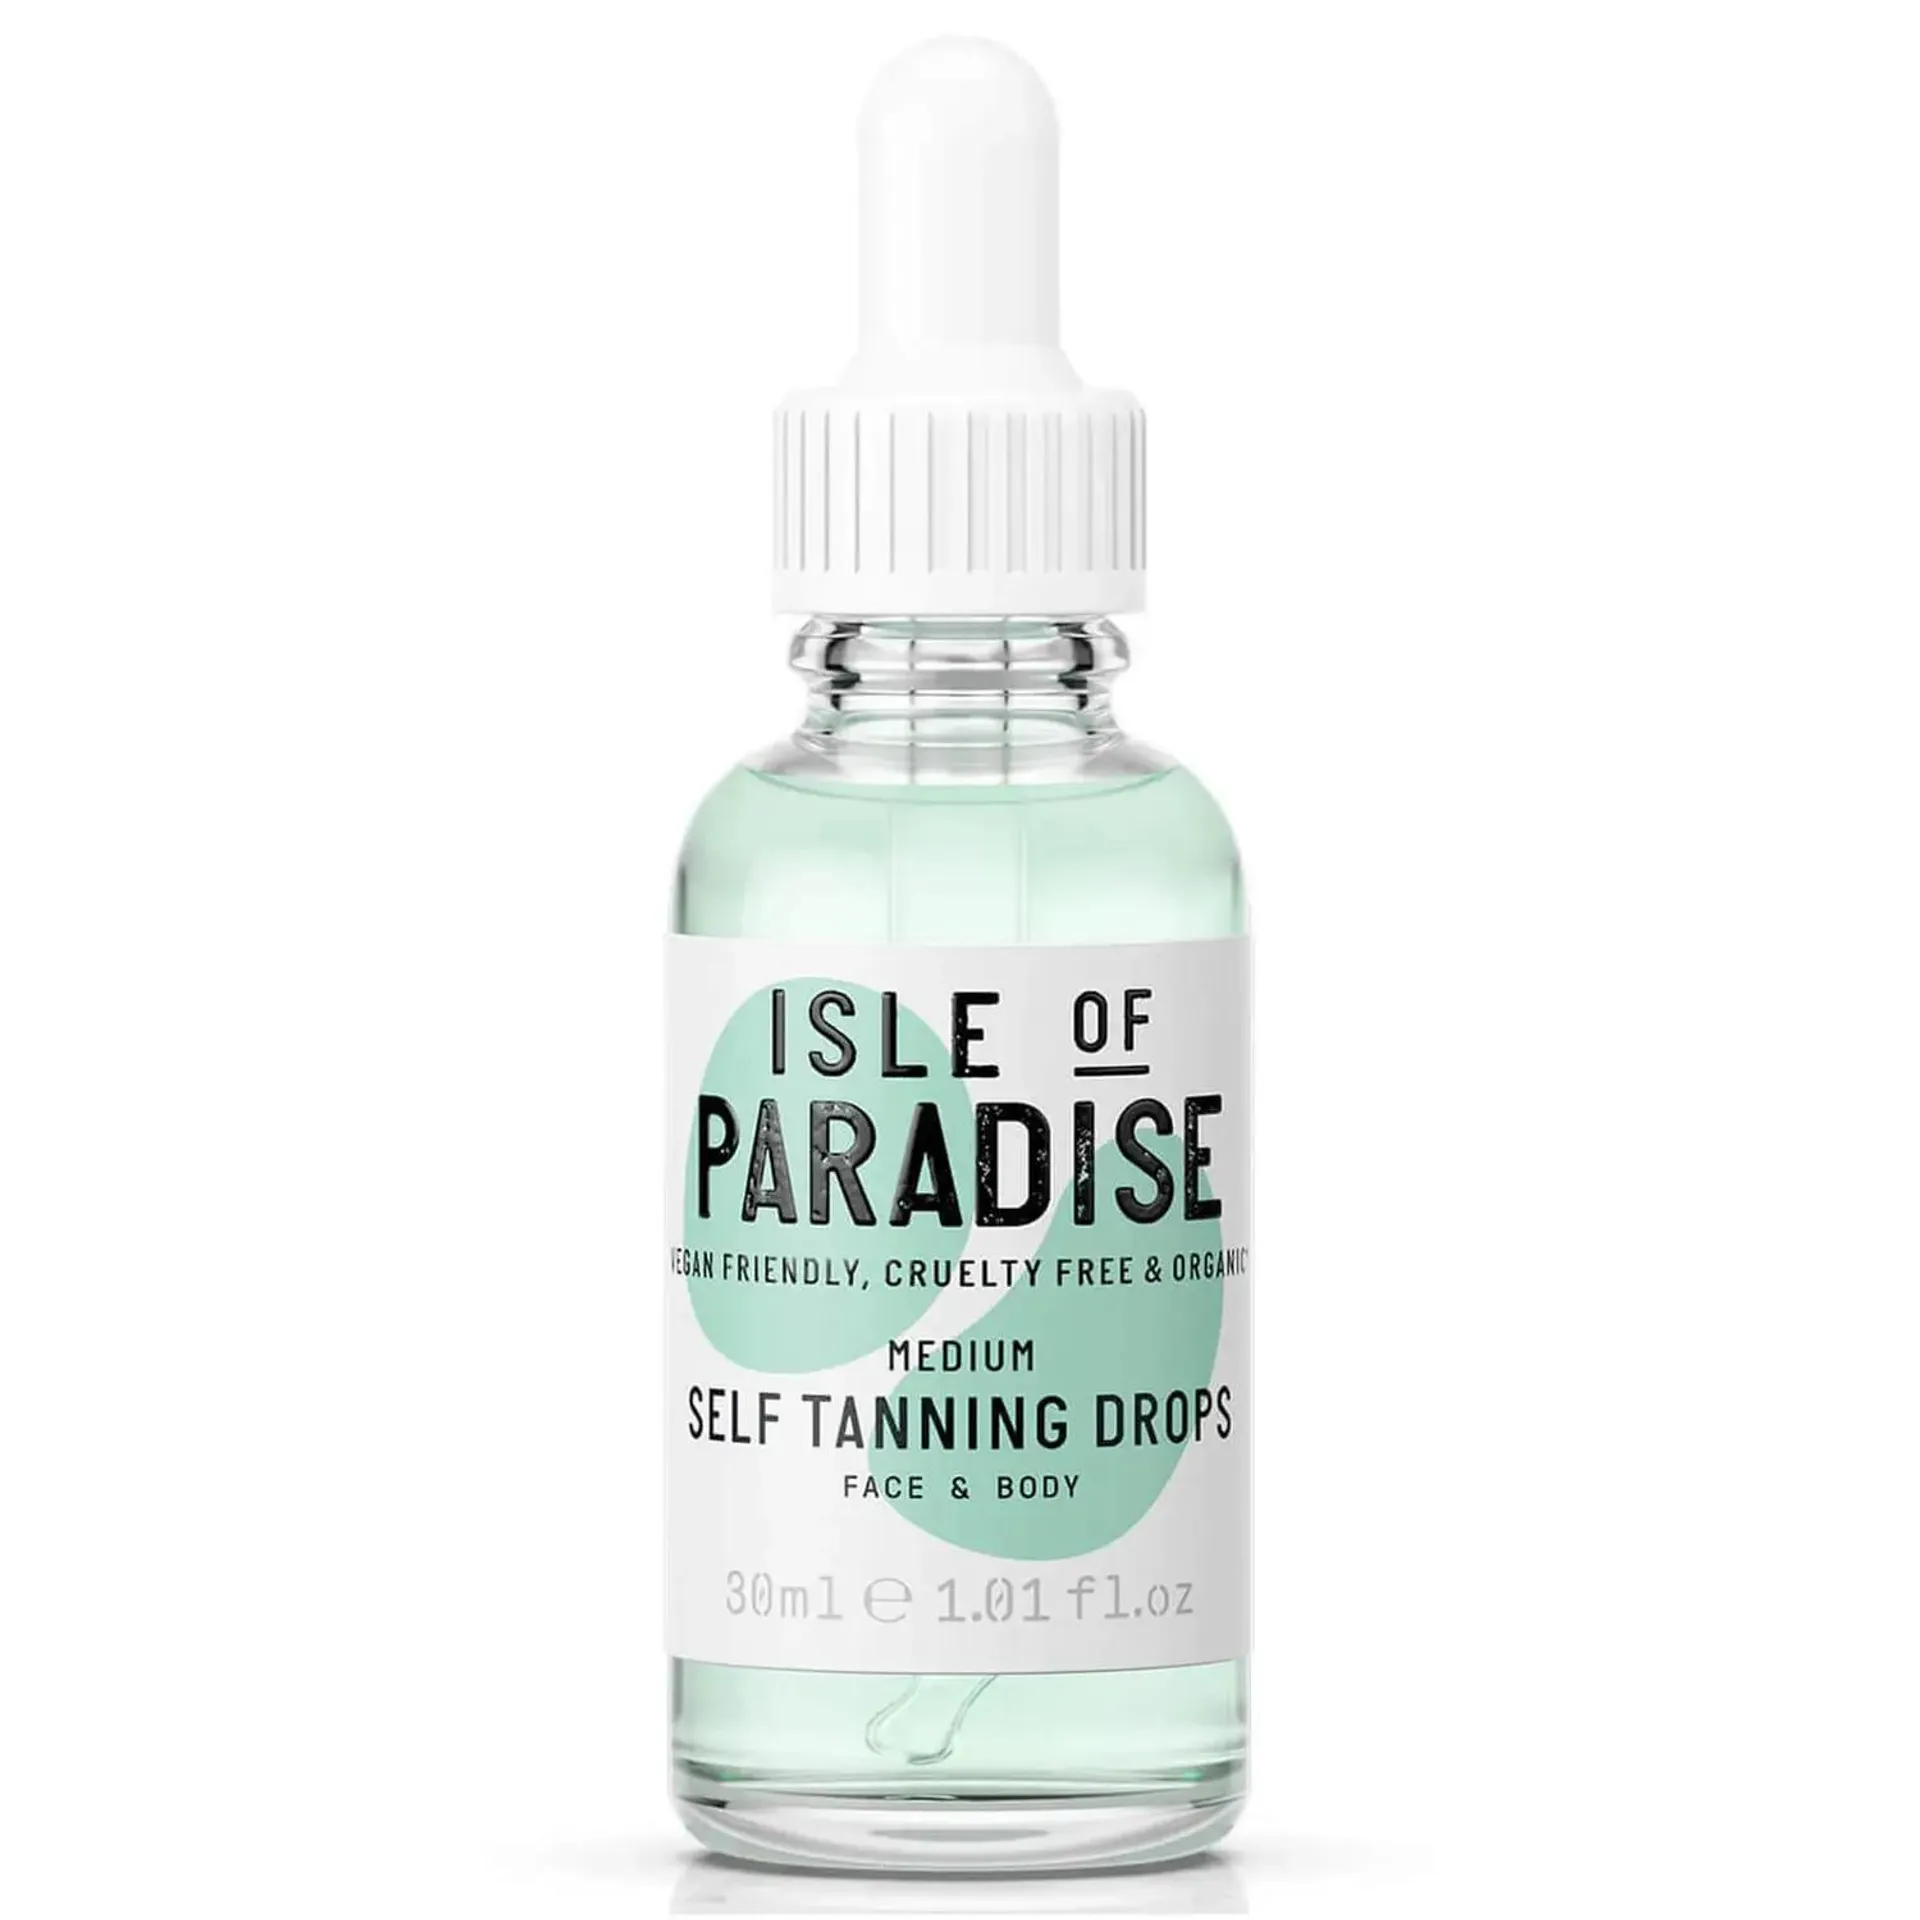 Isle of Paradise Self-Tanning Drops - Medium 30ml